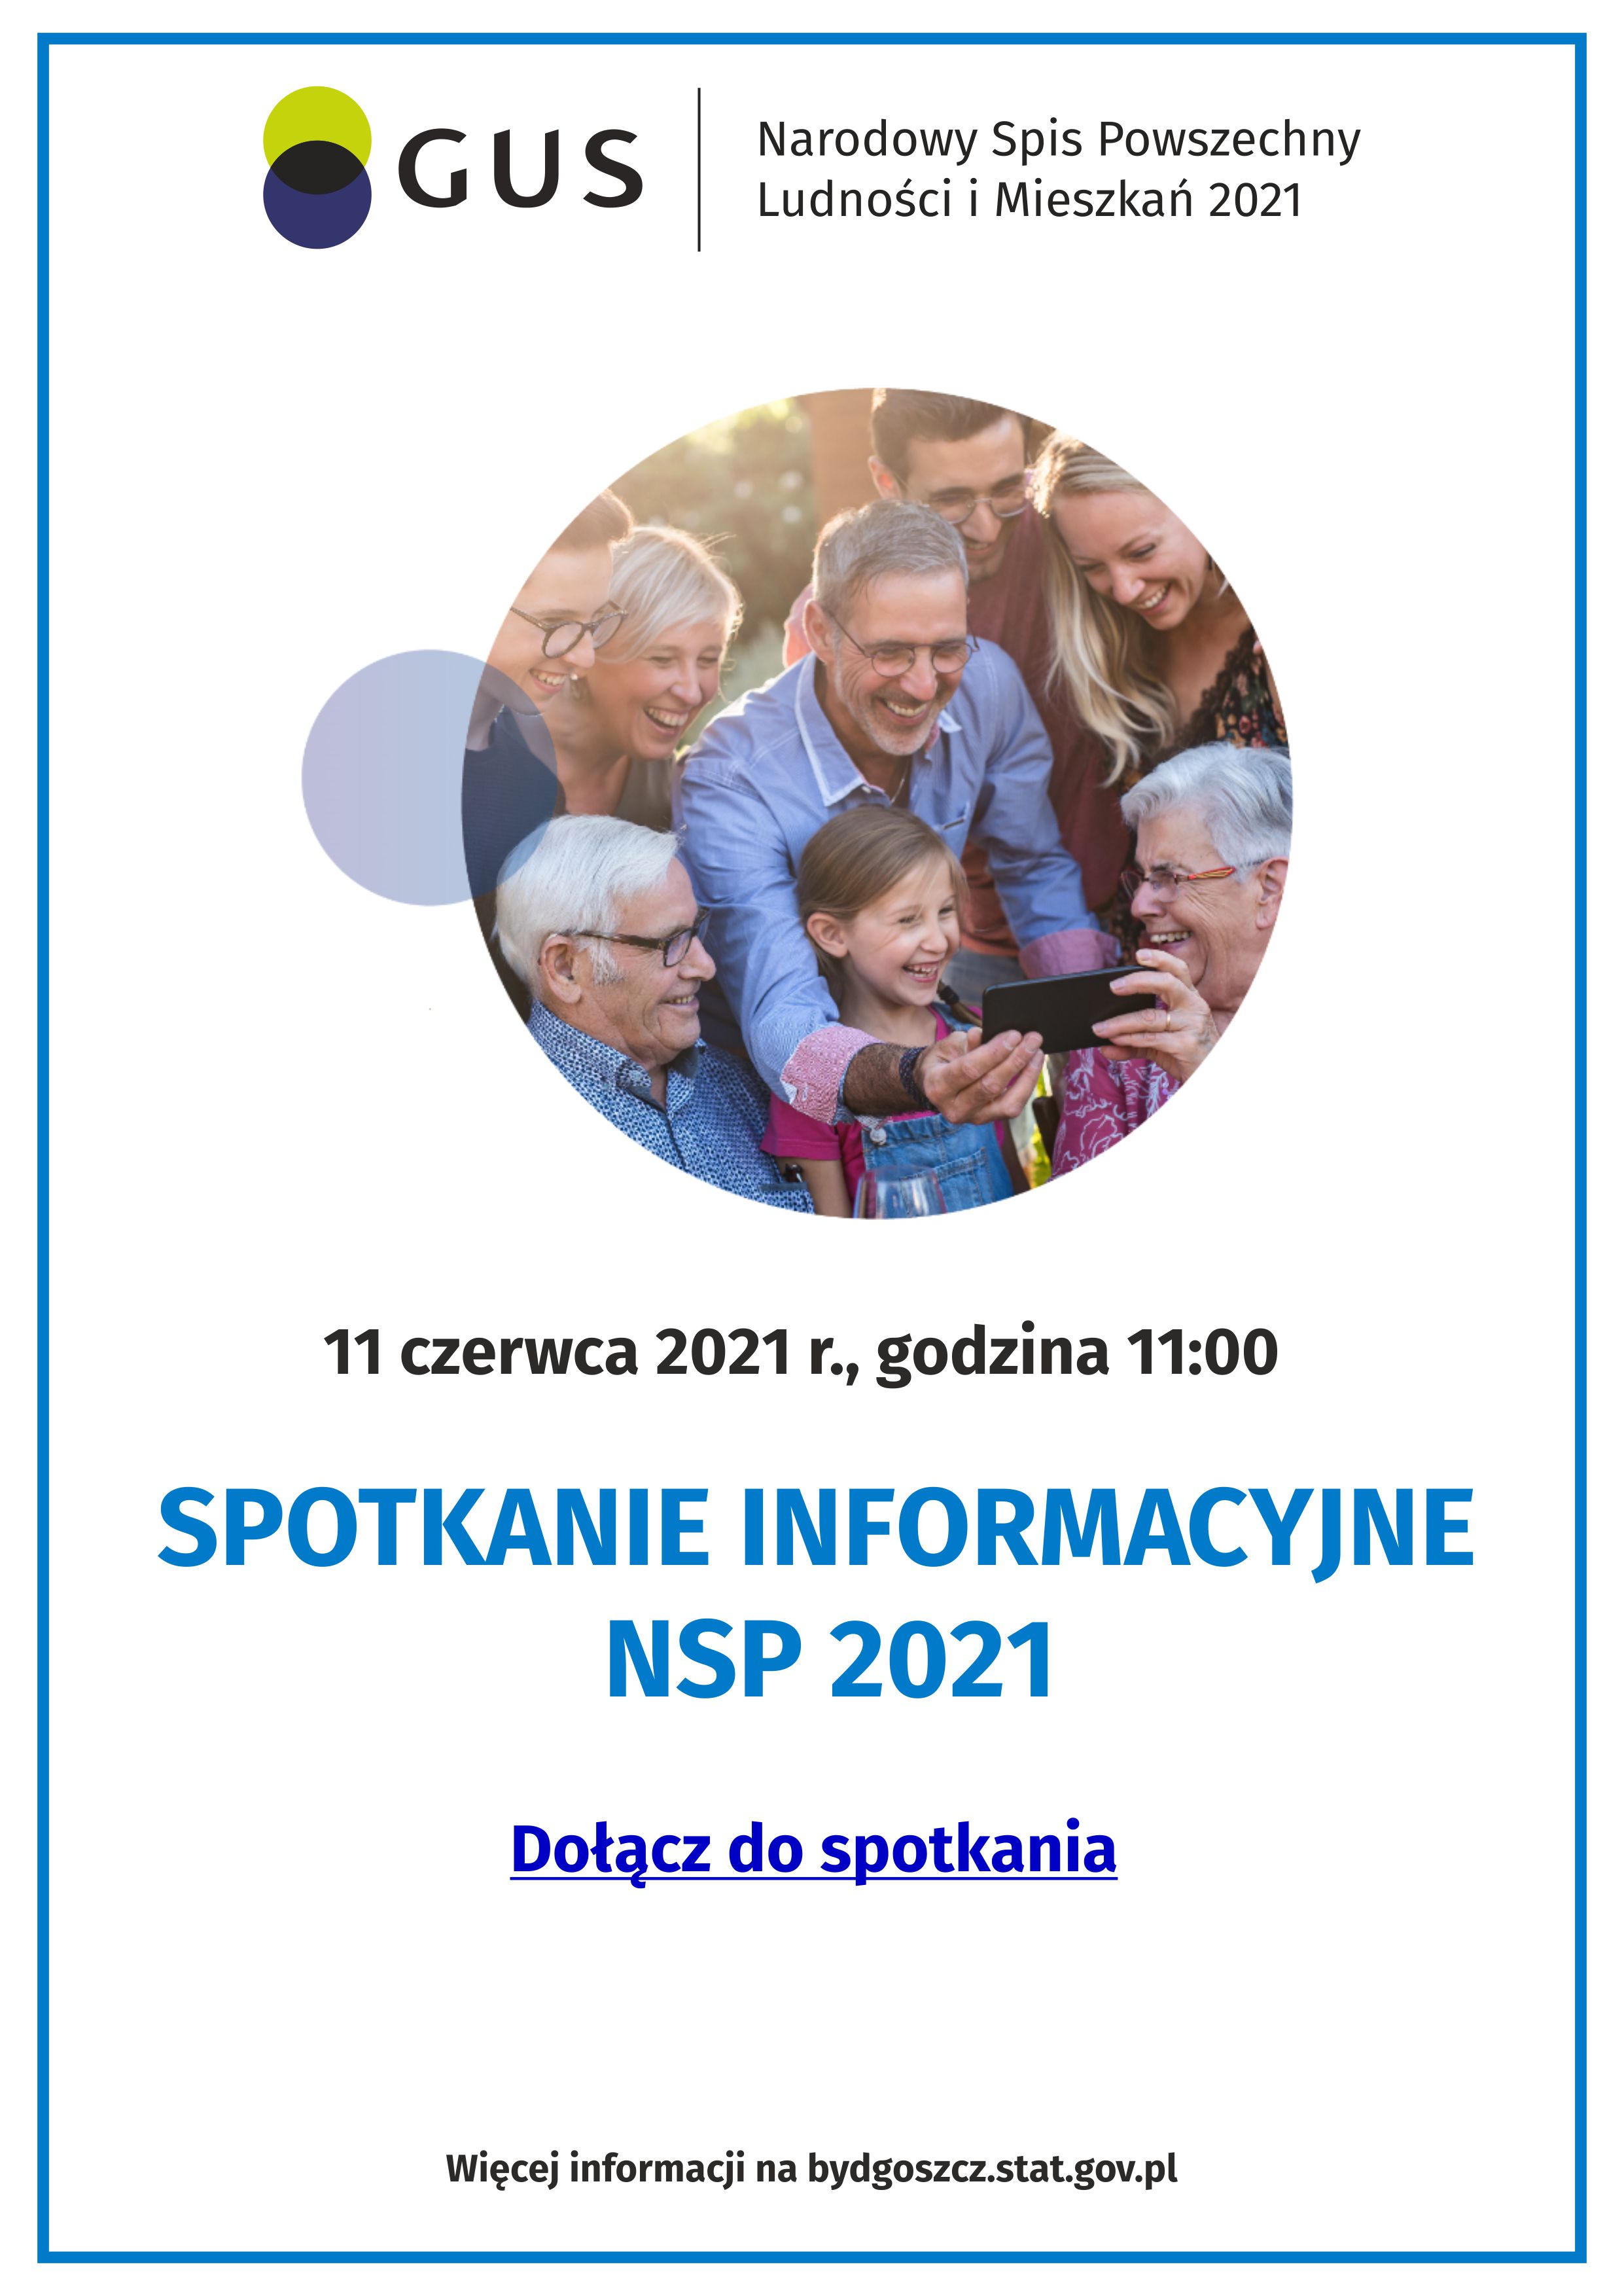 Spotkanie informacyjne w sprawie Narodowego Spisu Powszechnego - 11 czerwca 2021 roku - godzina 11:00